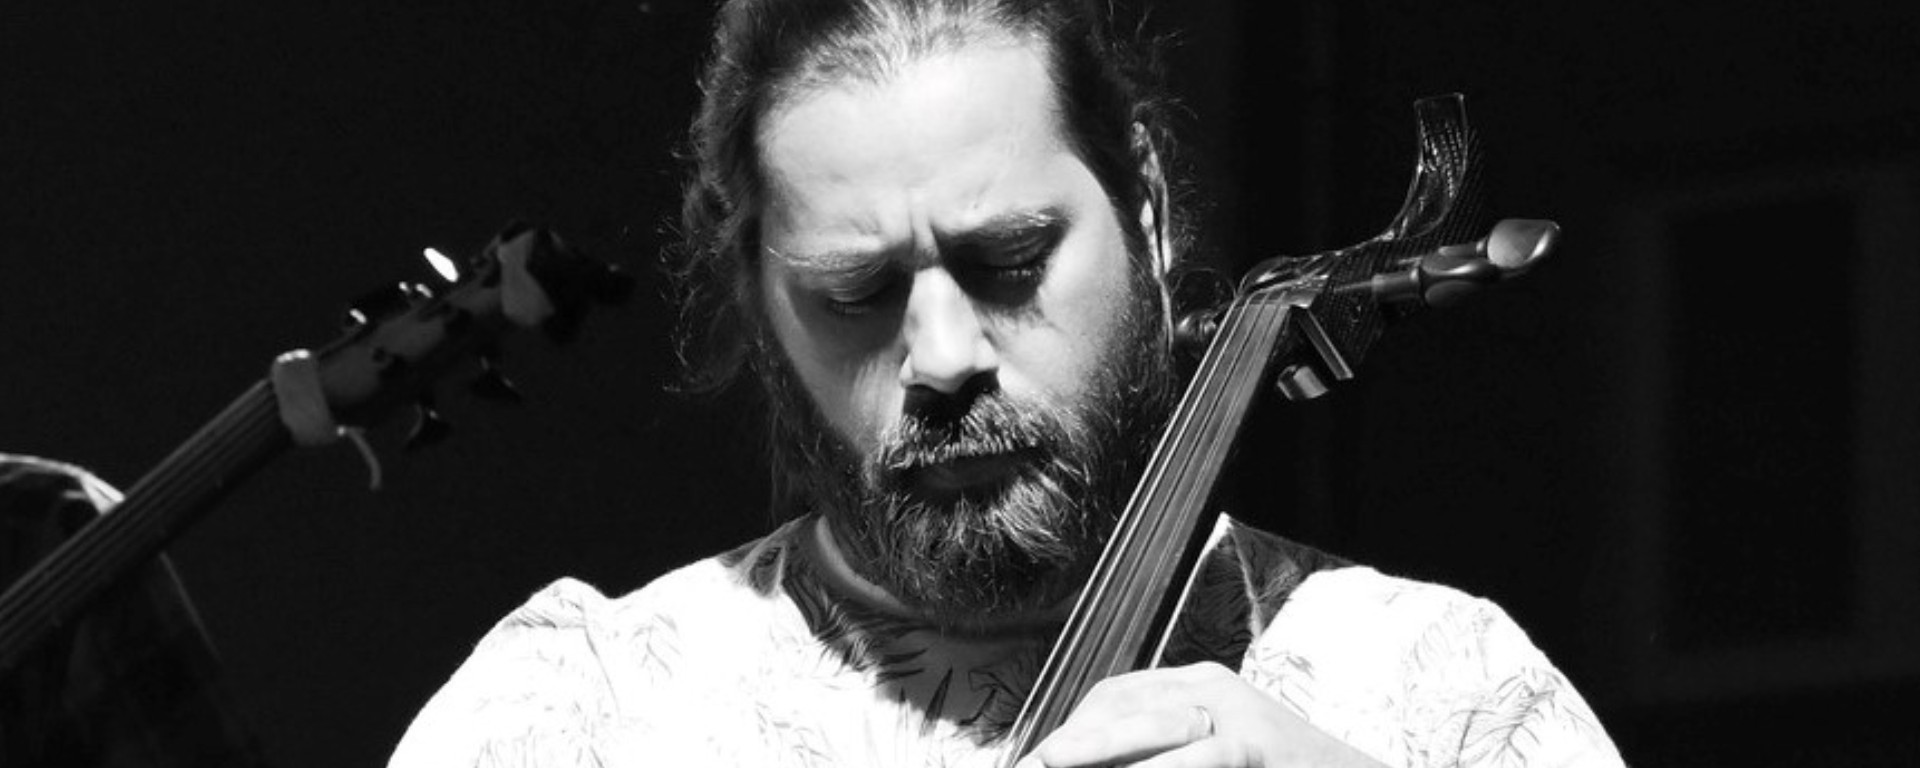 Matej Tkáč - hrával pre Janu Kirschner aj Paru, teraz vydáva svoj debutový album.